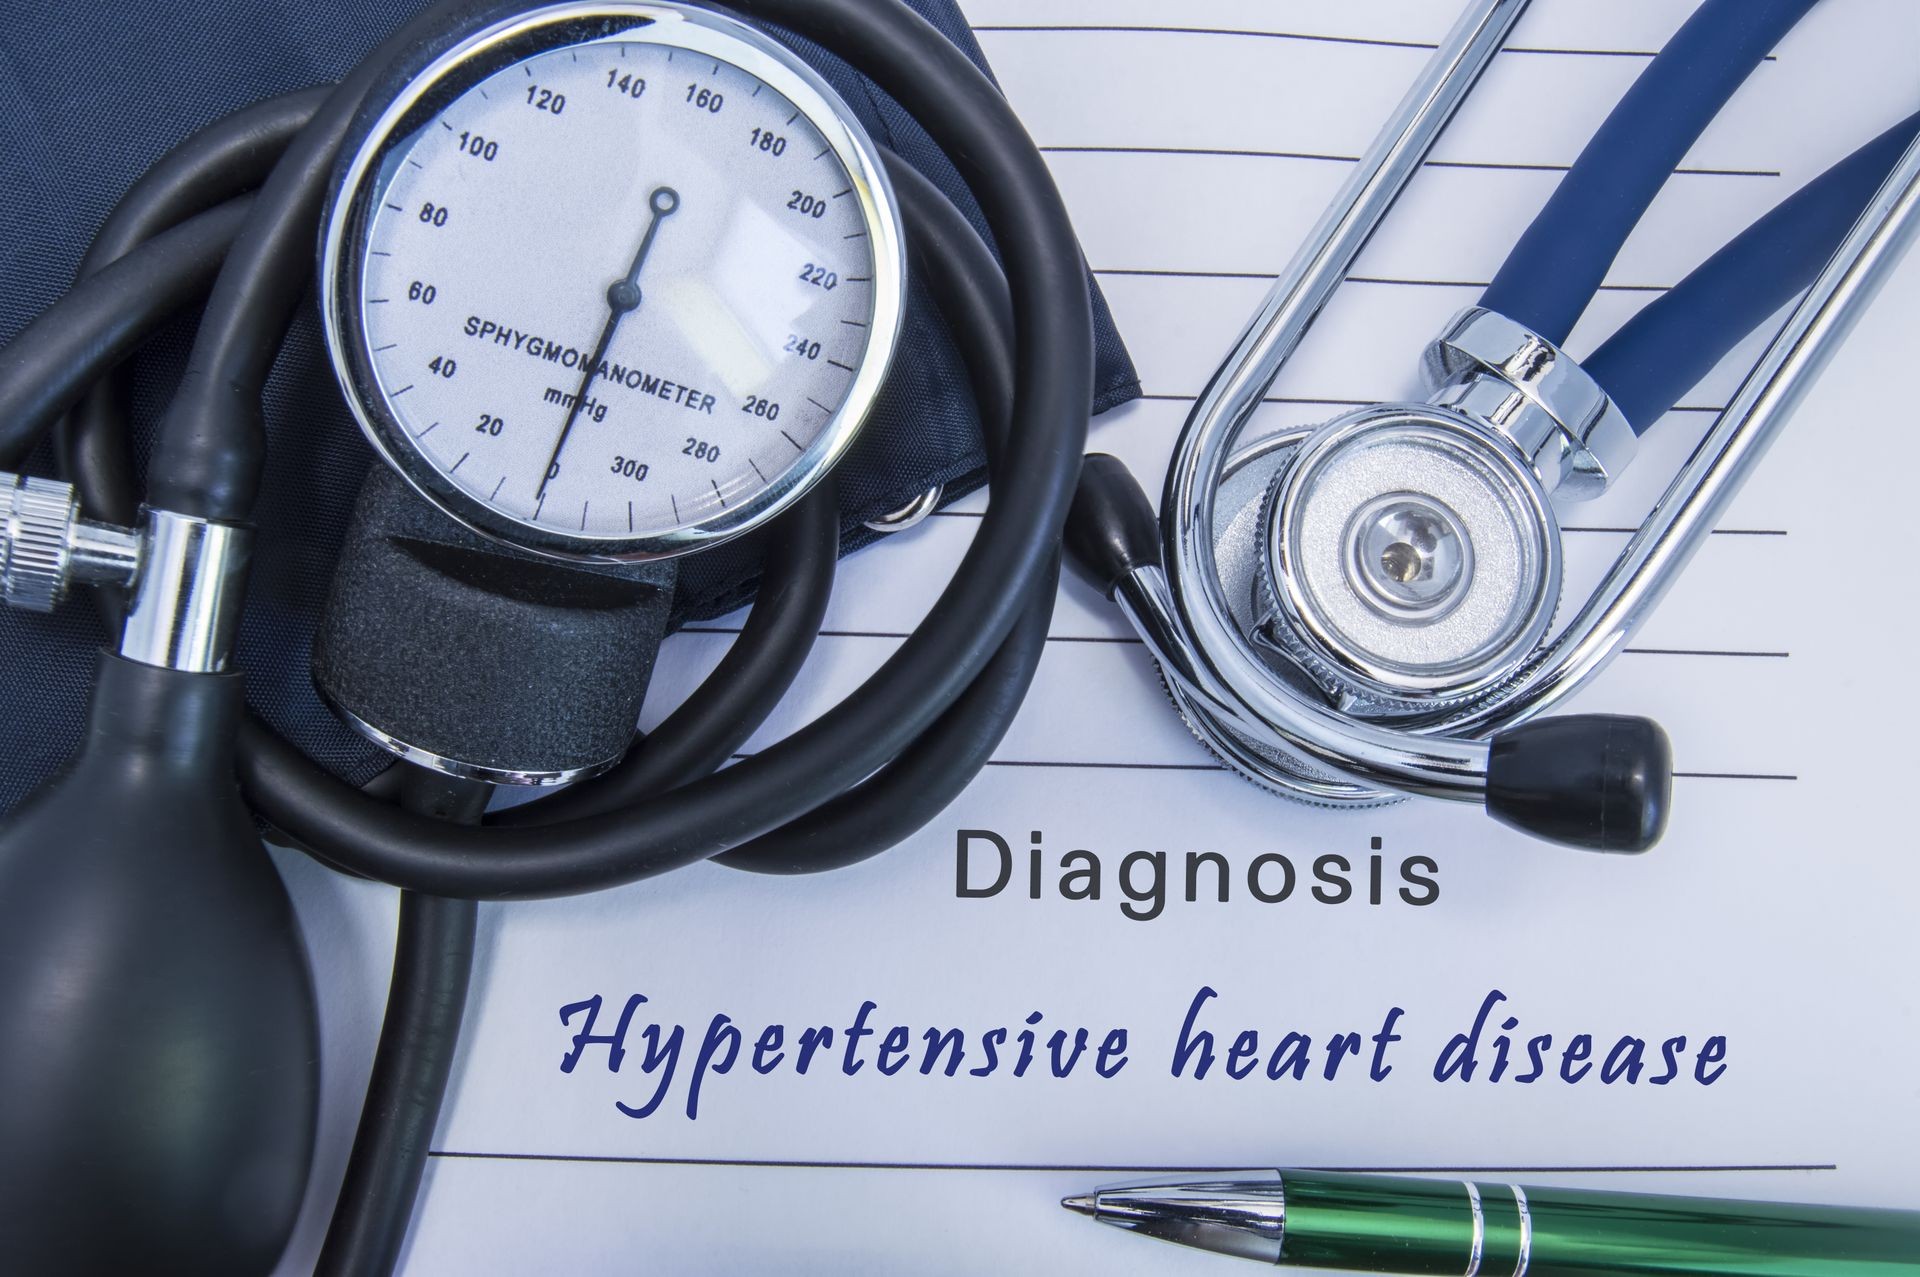 15 Effective Ways to Prevent Hypertension